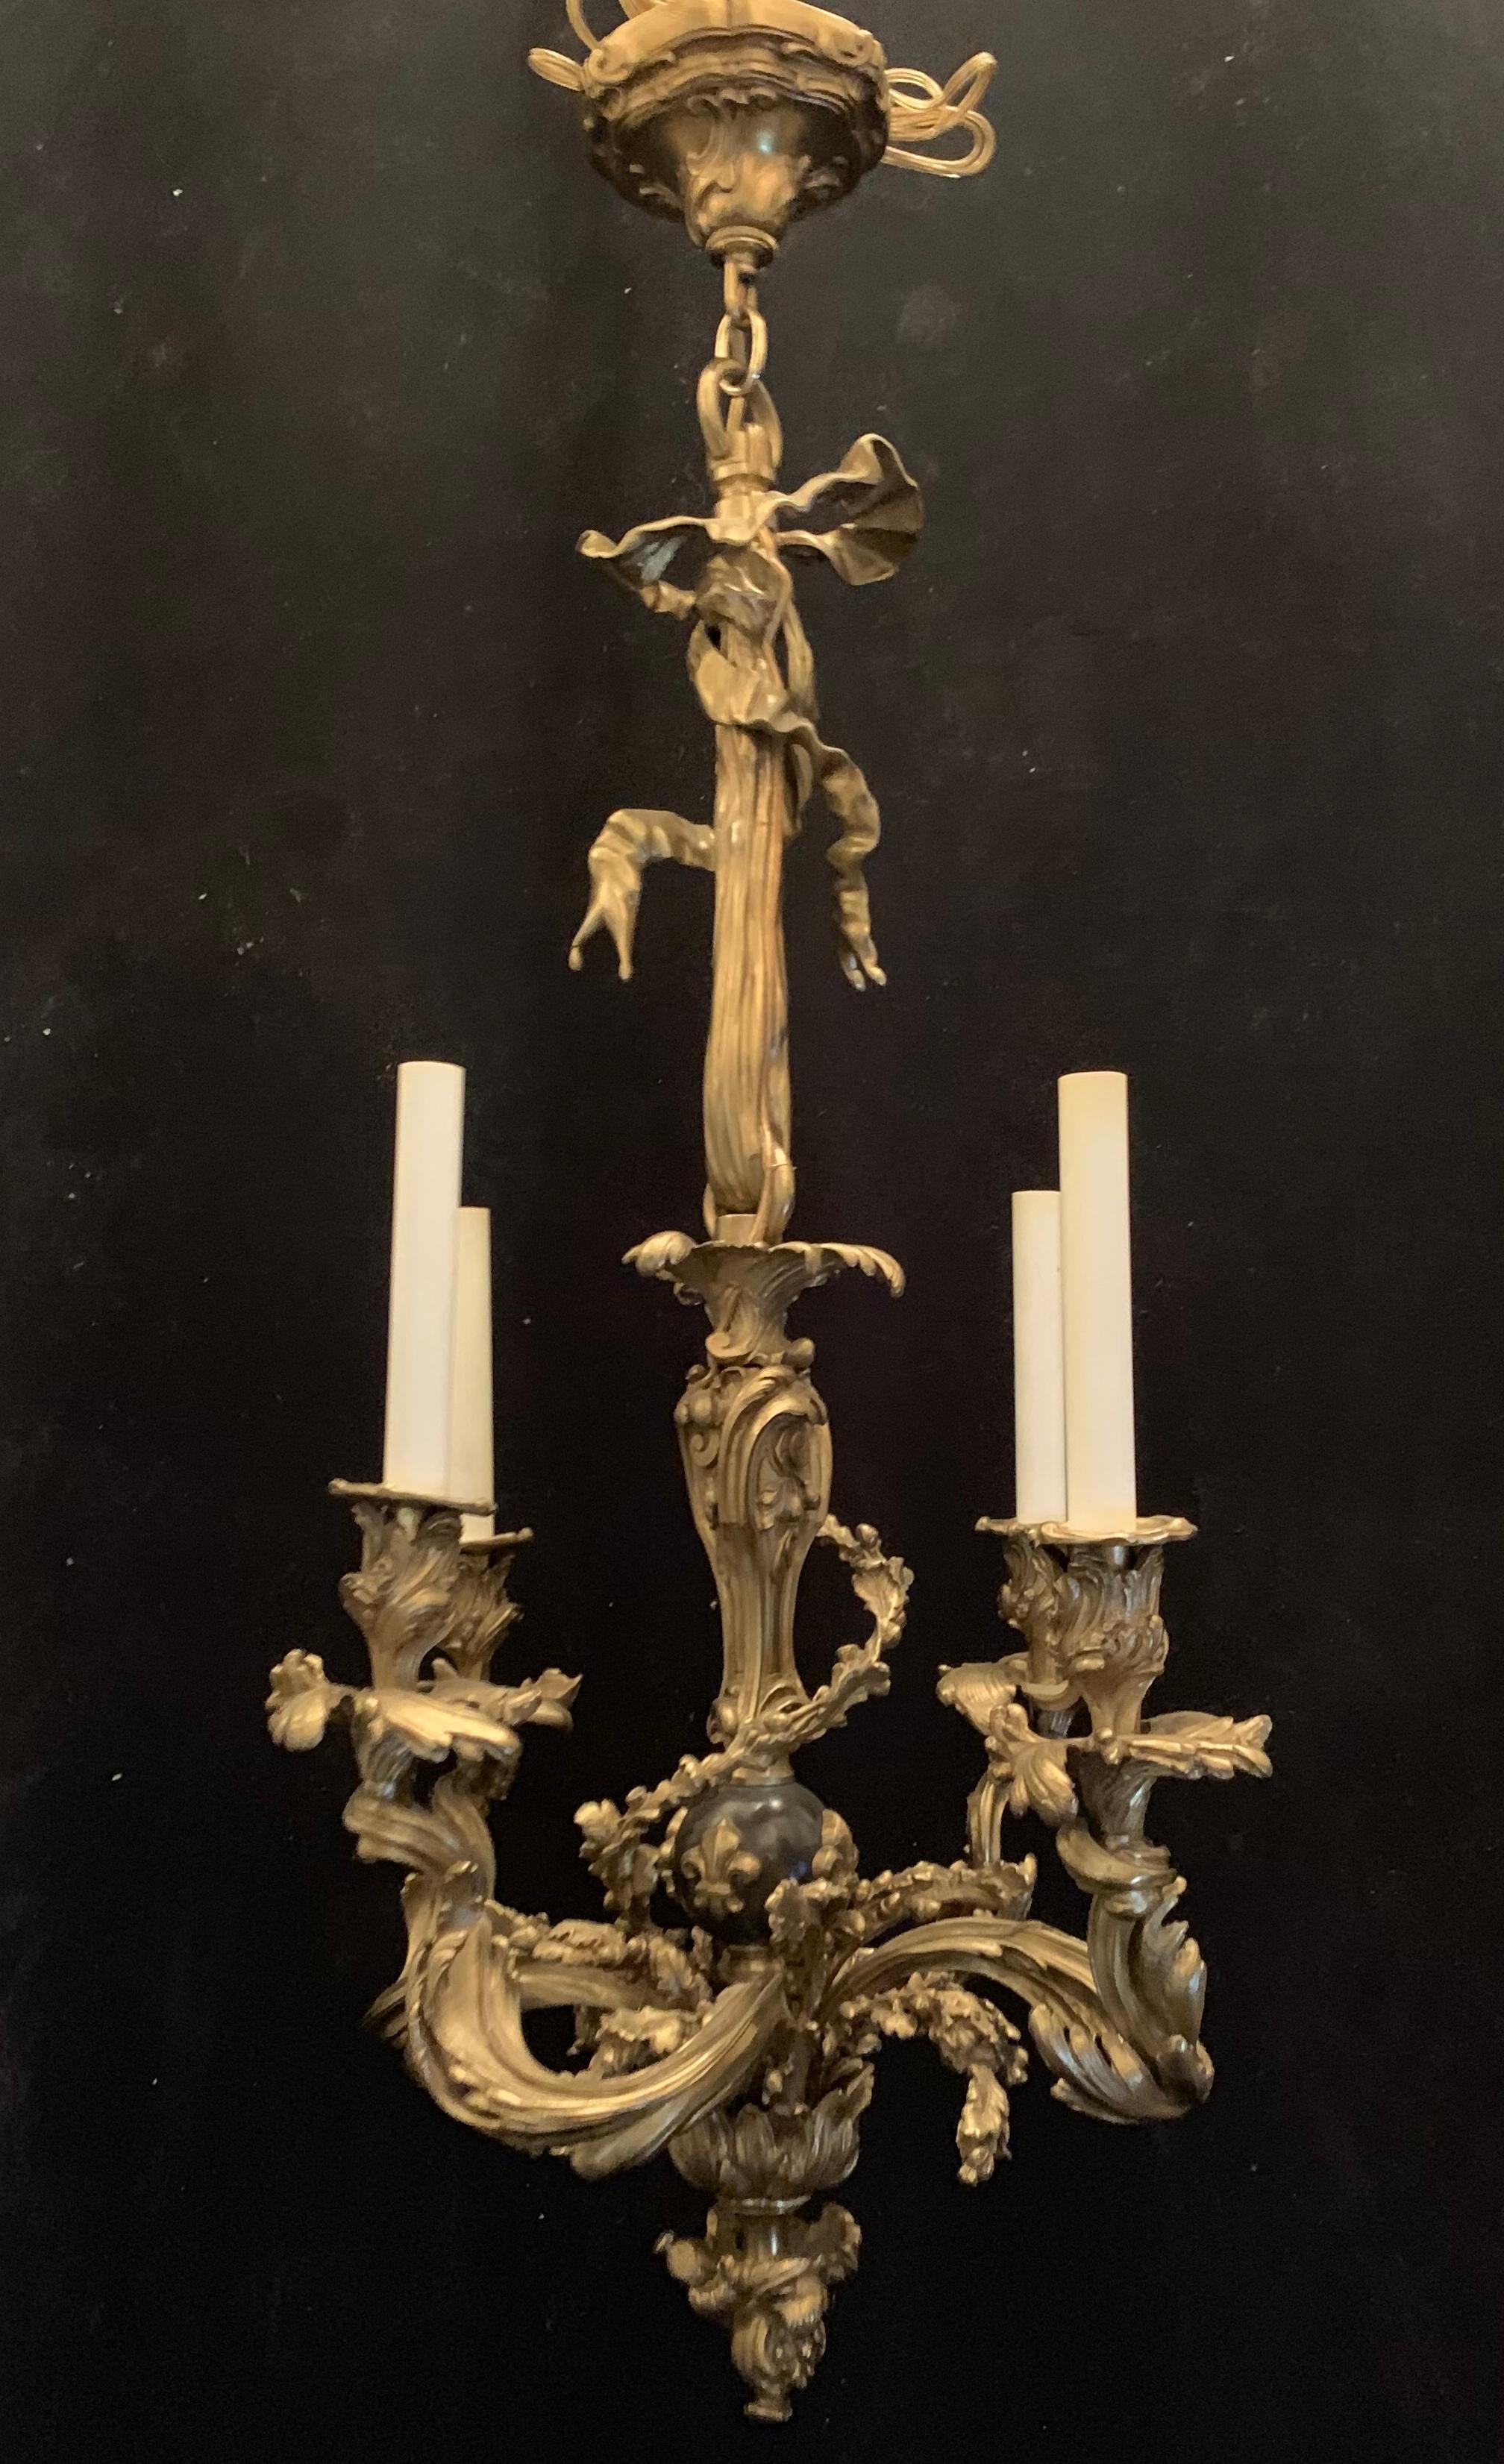 Un merveilleux lustre néoclassique français en bronze doré et patiné à nœud/passel de style Rococo à 4 chandeliers avec appliques de fleurs de lys.